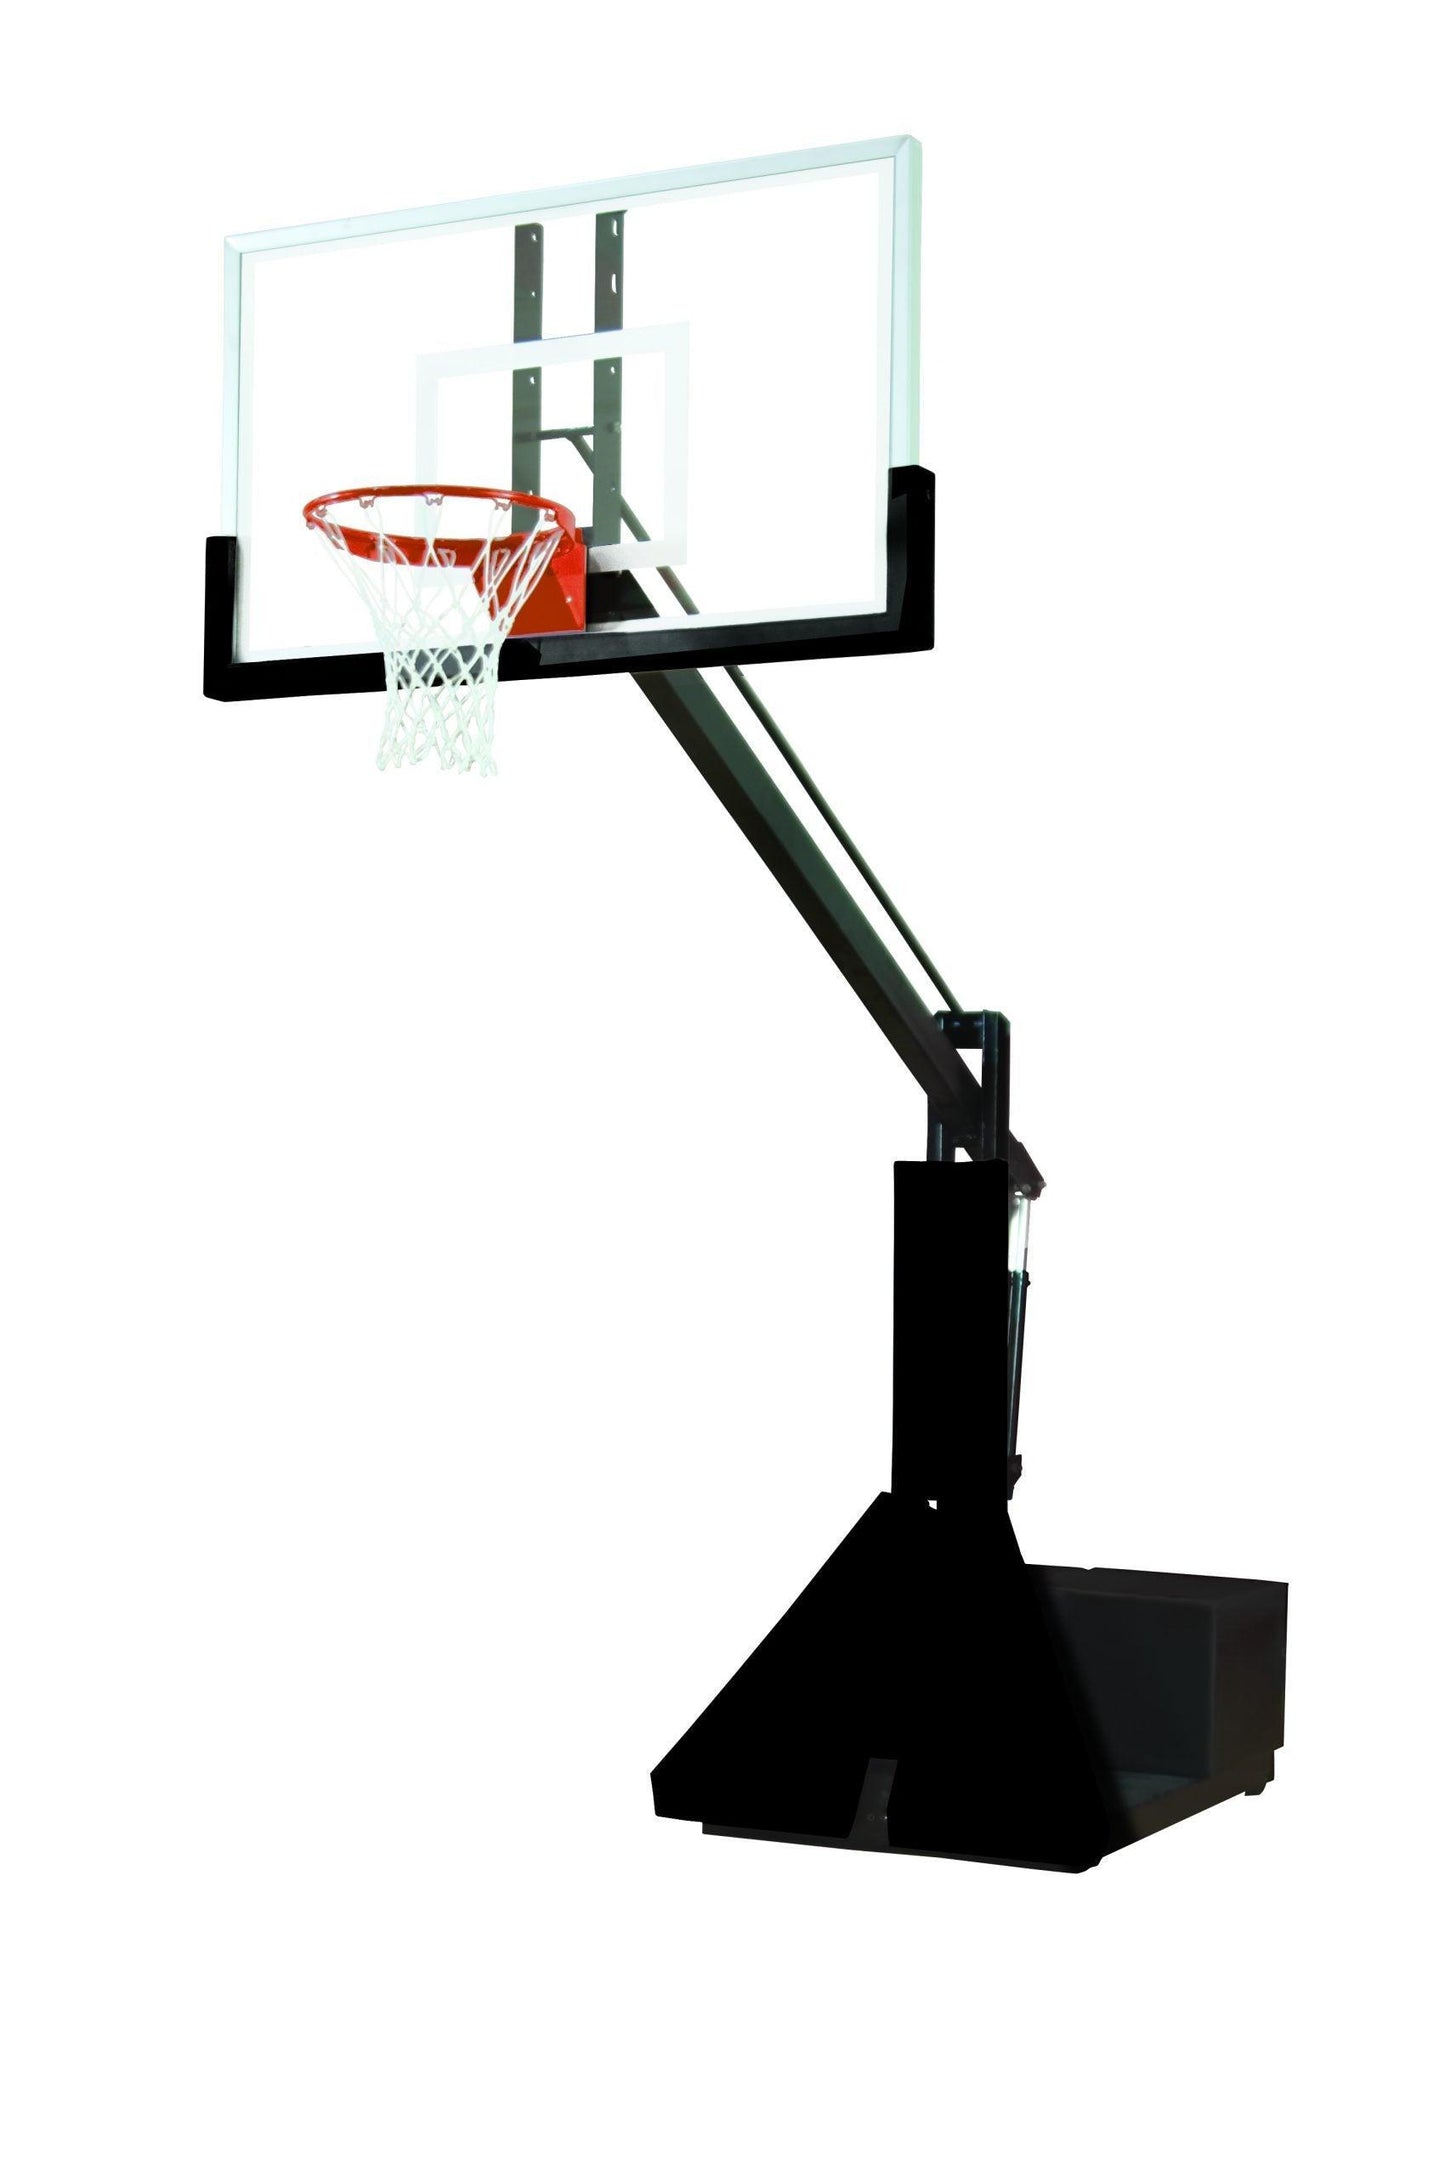 Super Glass Max Portable Adjustable Basketball System - bisoninc